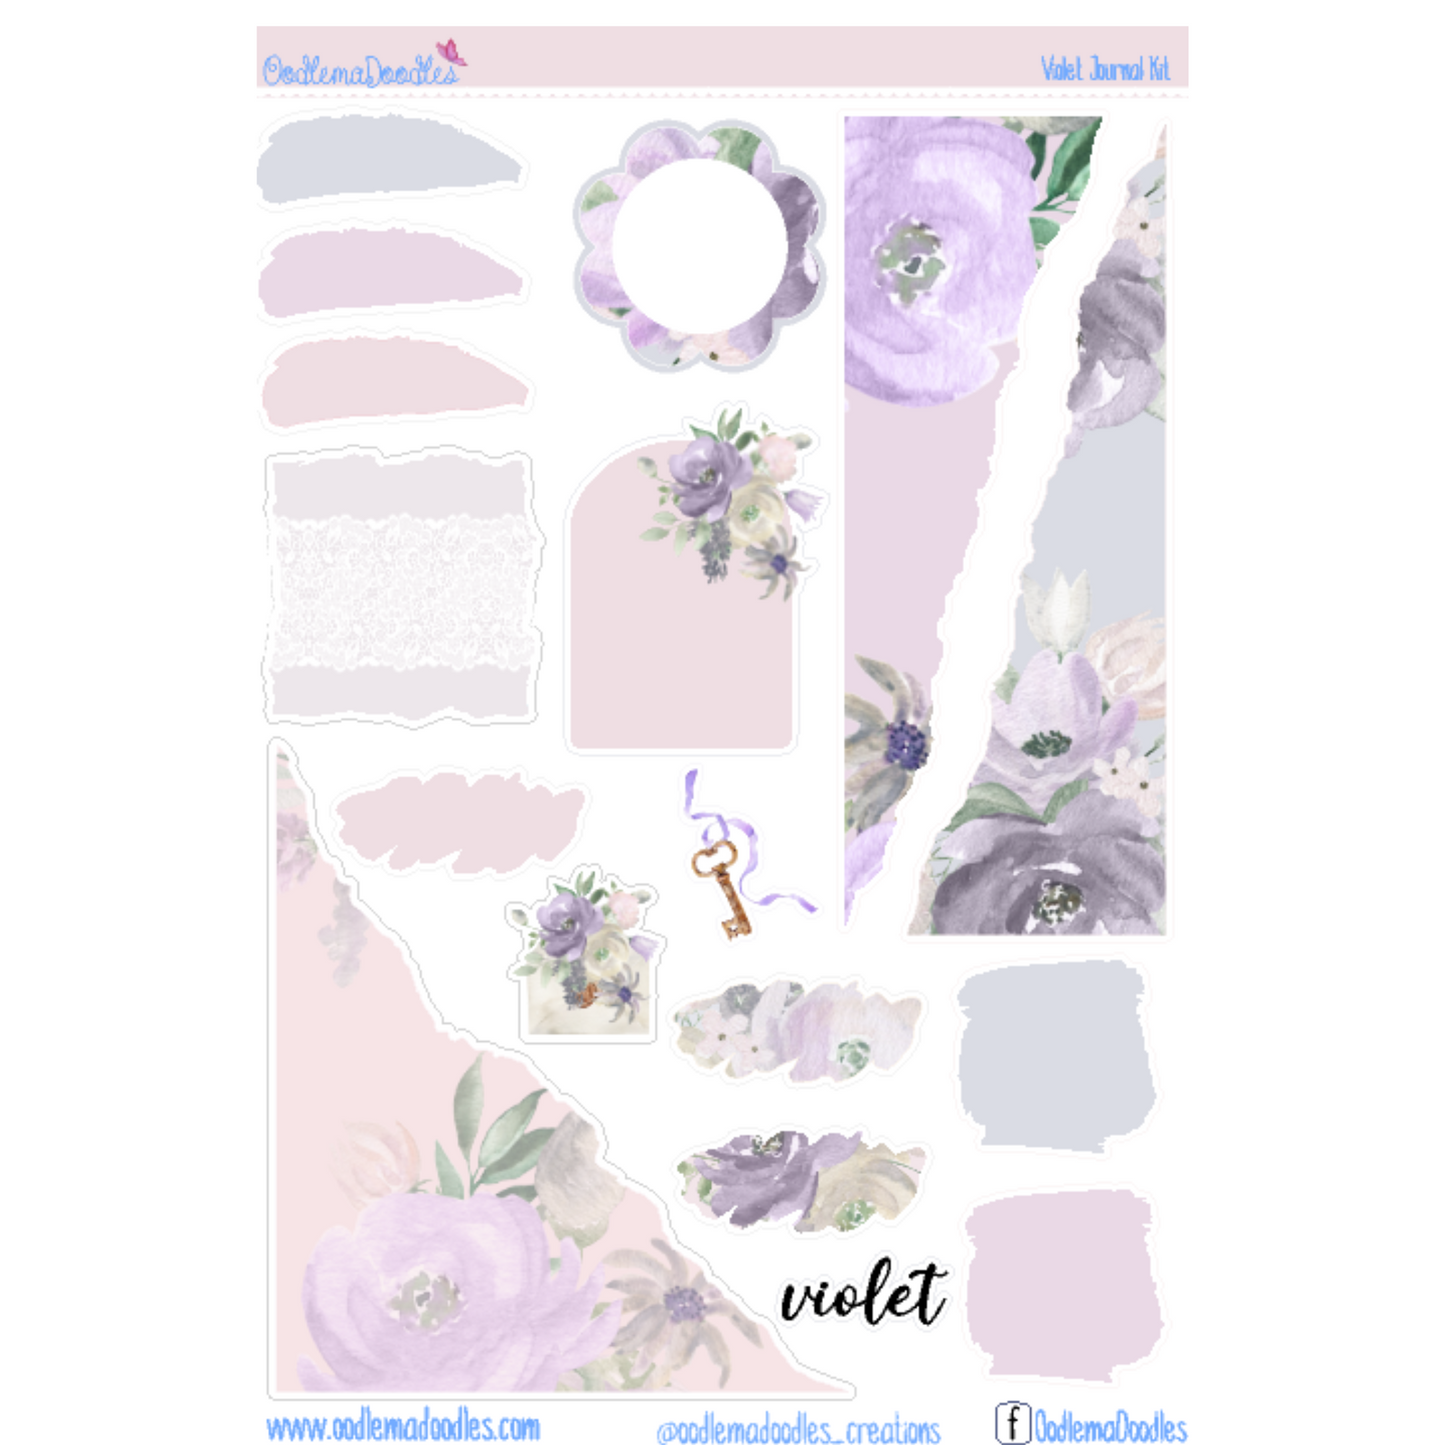 Violet Journal Set